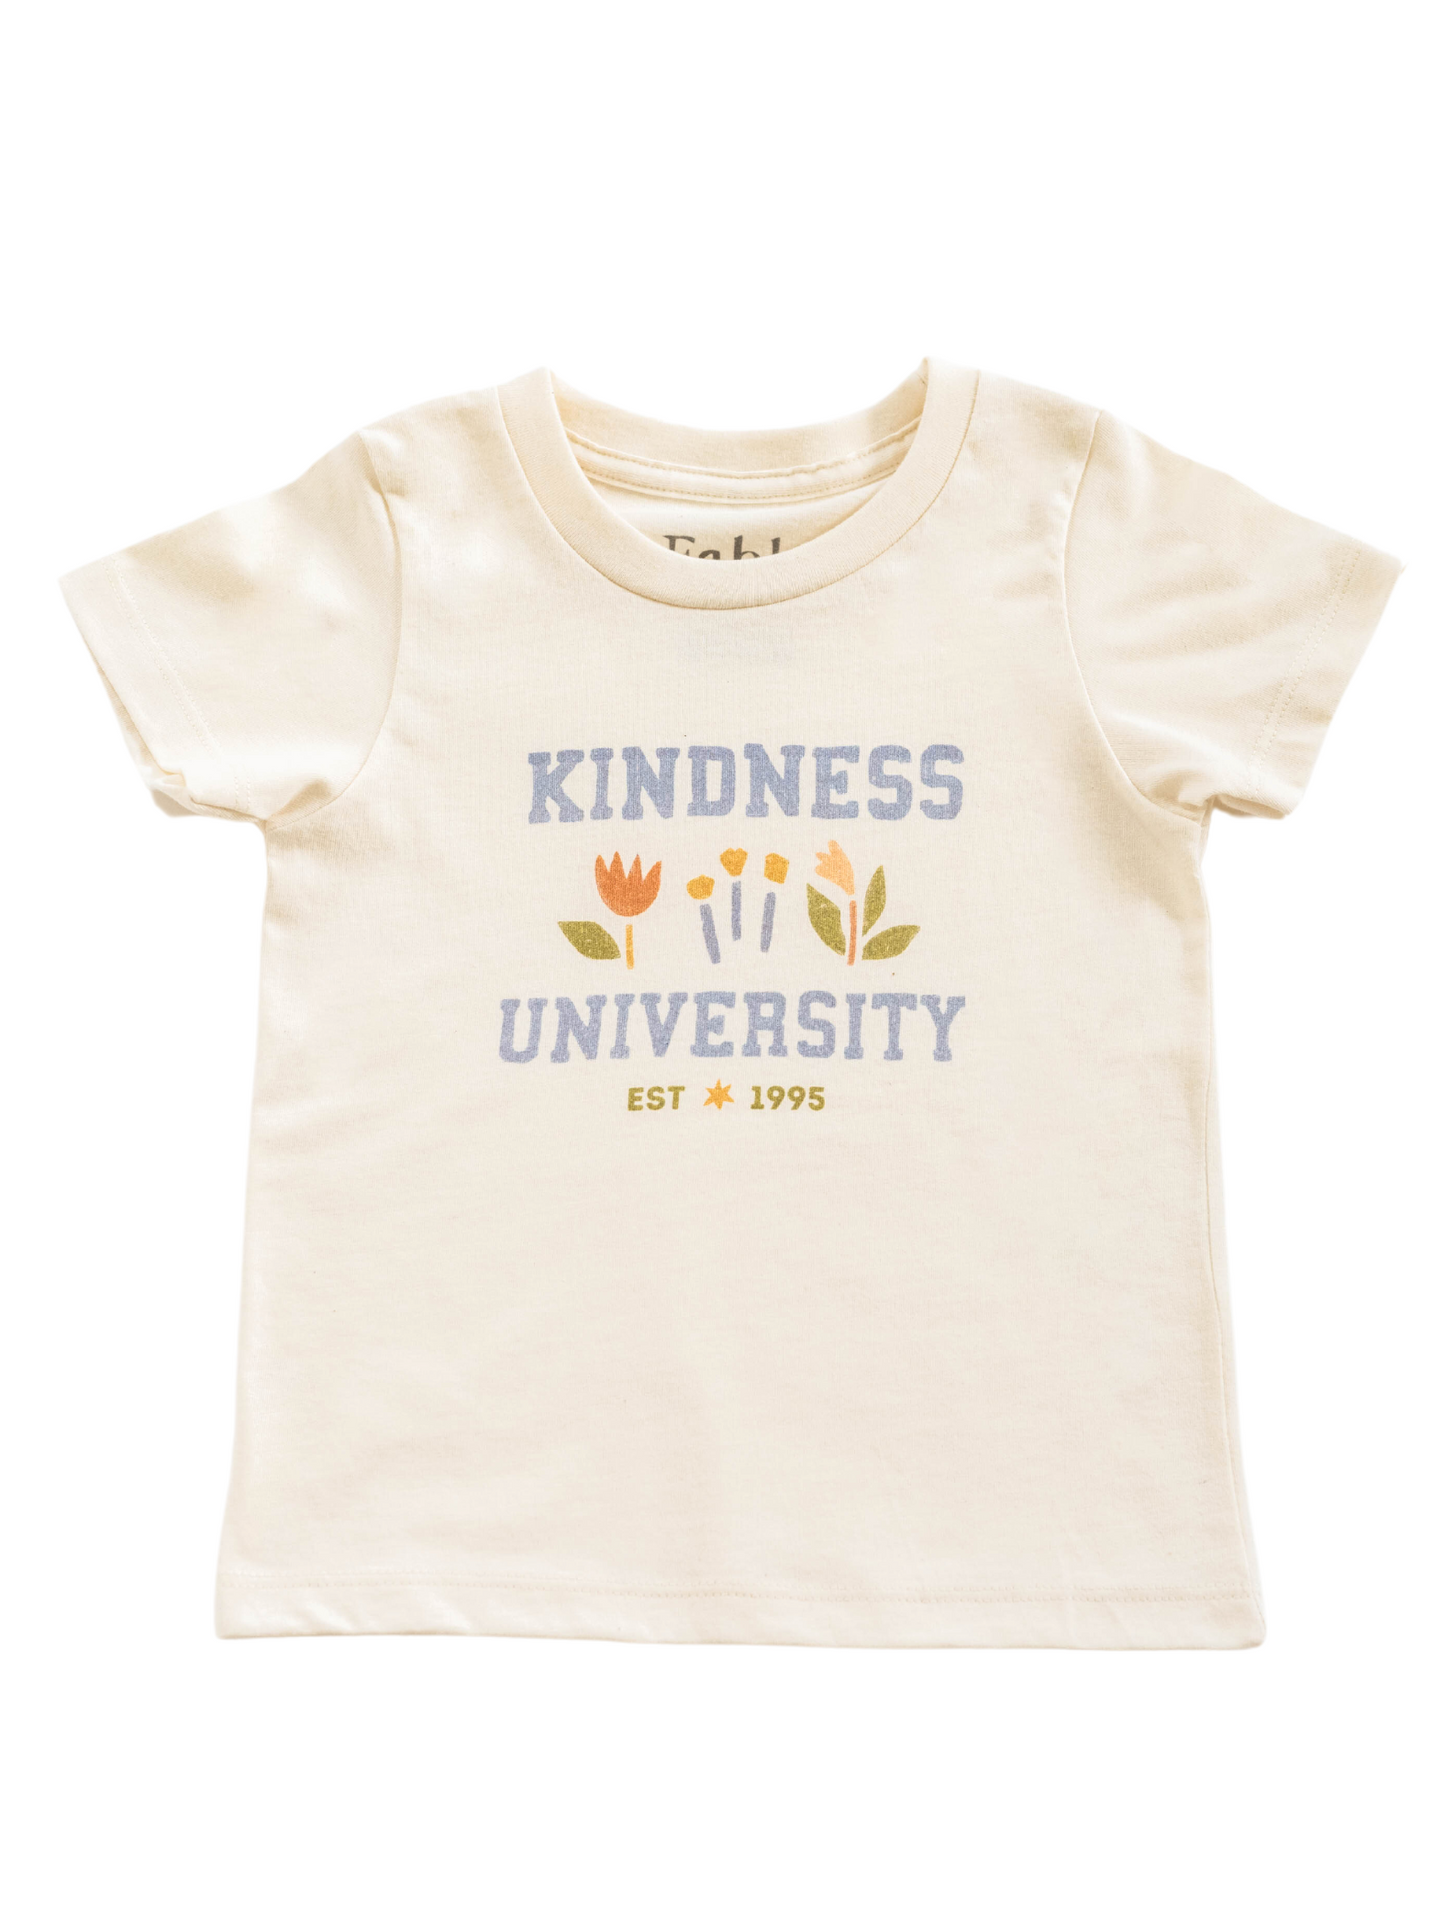 Kindness University